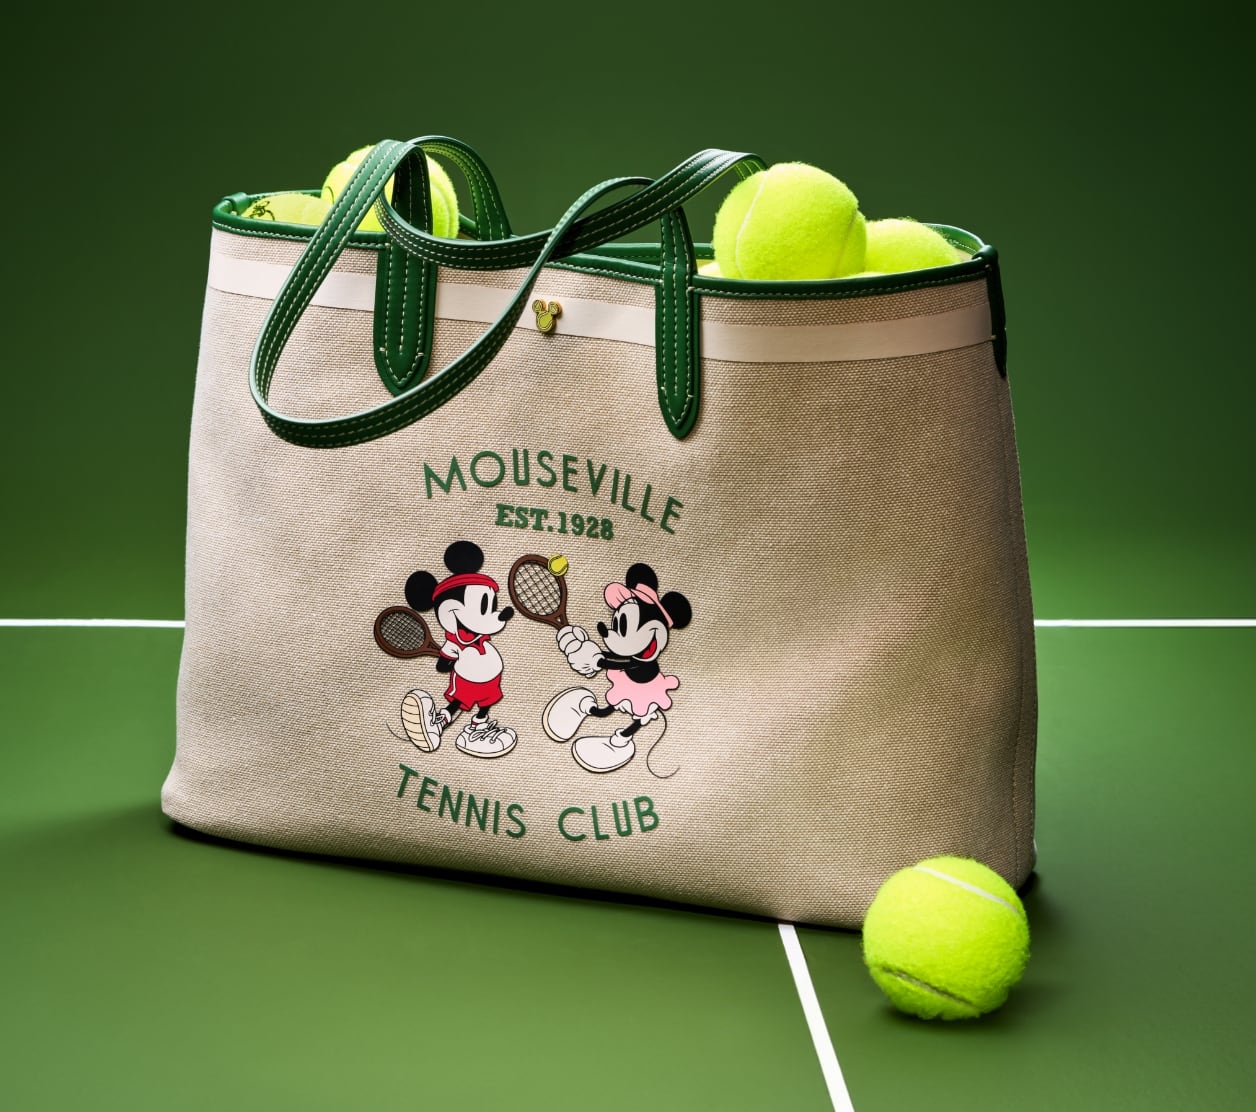 鮮やかなグリーンのテニスボールが詰め込まれ、テニスコートに置かれたスペシャルエディションのDISNEY TENNISトート。グリーンレザーのトリムが施されたコットンキャンバスのバッグには、テニスをするミッキーとミニーのグラフィックがスクリーンプリントであしらわれ、さらに「Mouseville Tennis Club, Est.1928」の文字が 入っています。